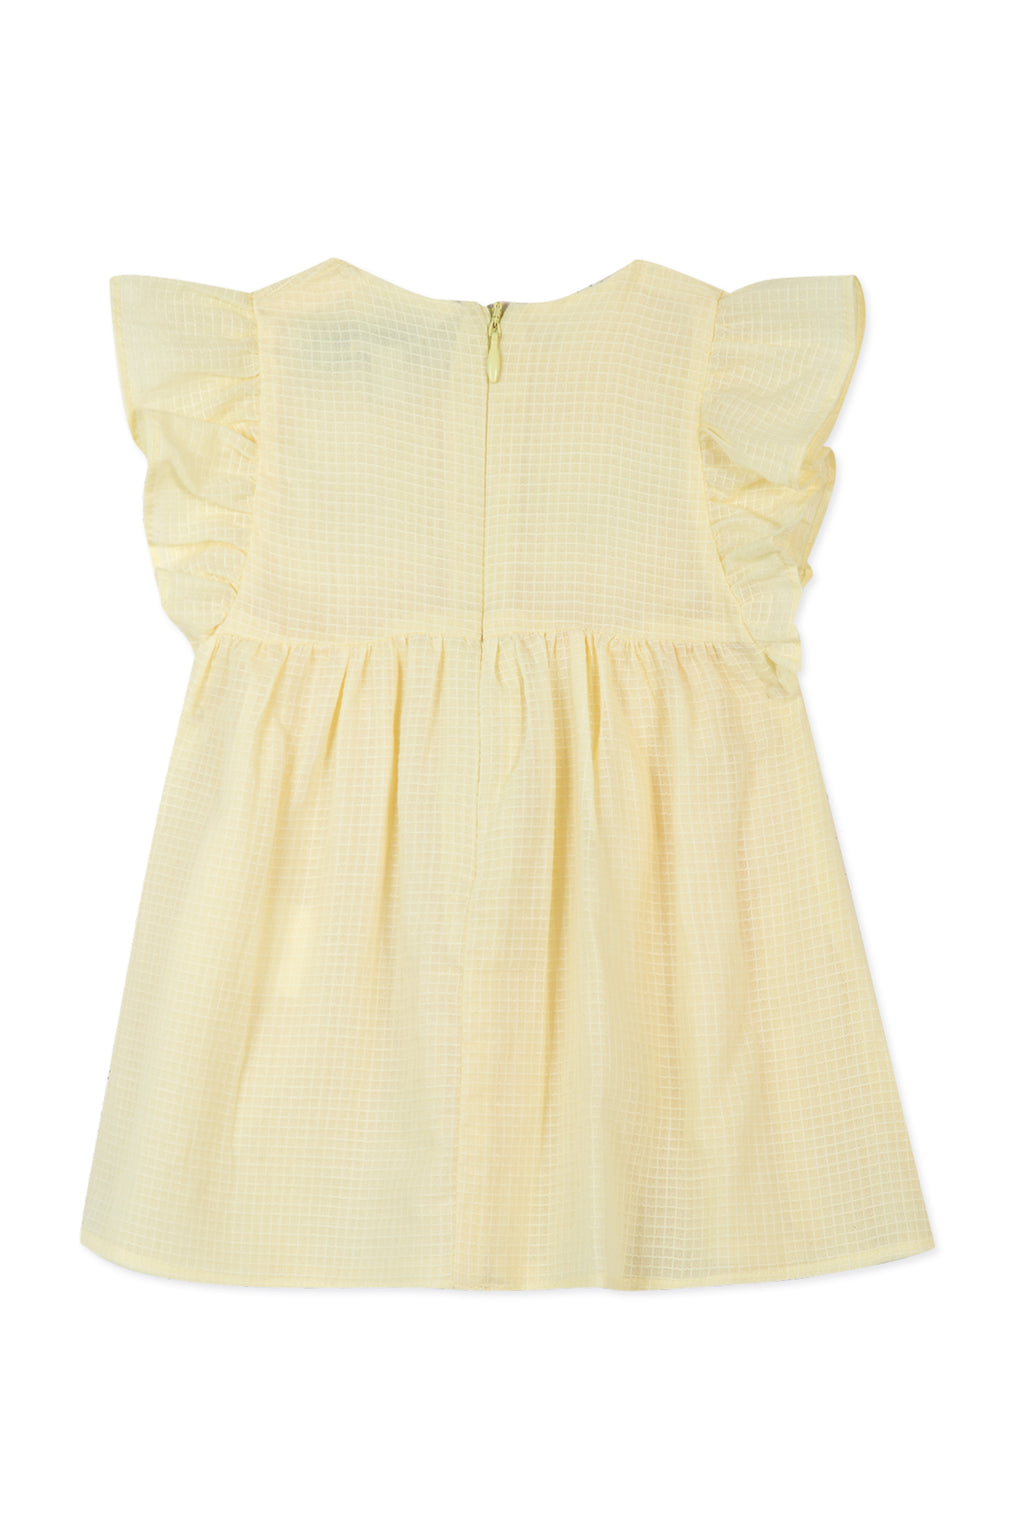 Dress - Yellow cotton sail